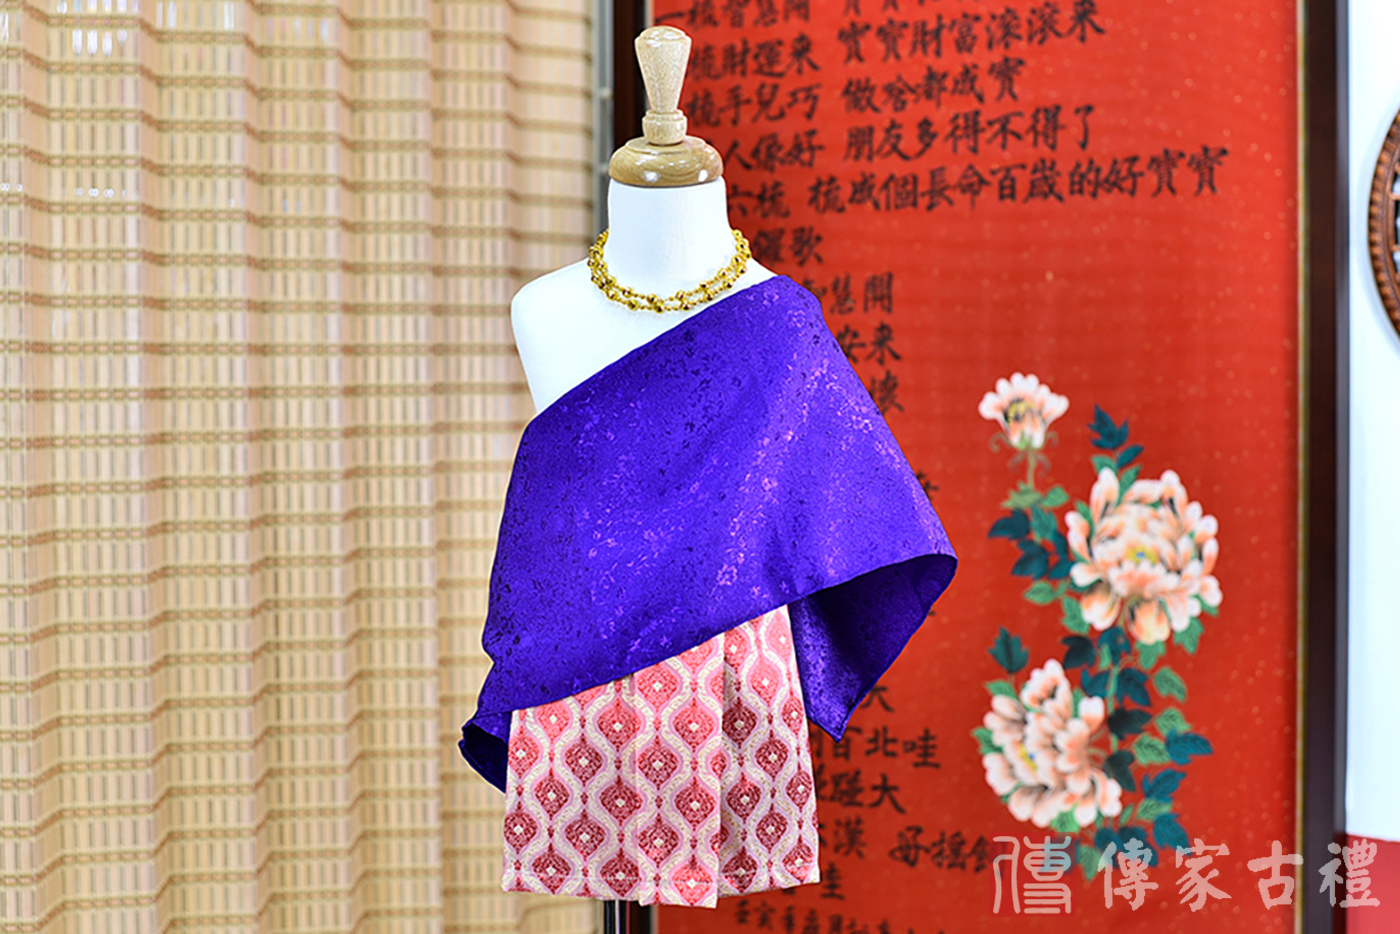 2024-02-22小孩皇室泰服古裝禮服。深紫色的紋路披肩上衣搭配紅色方格狀裙裝的泰式古裝禮服。照片集